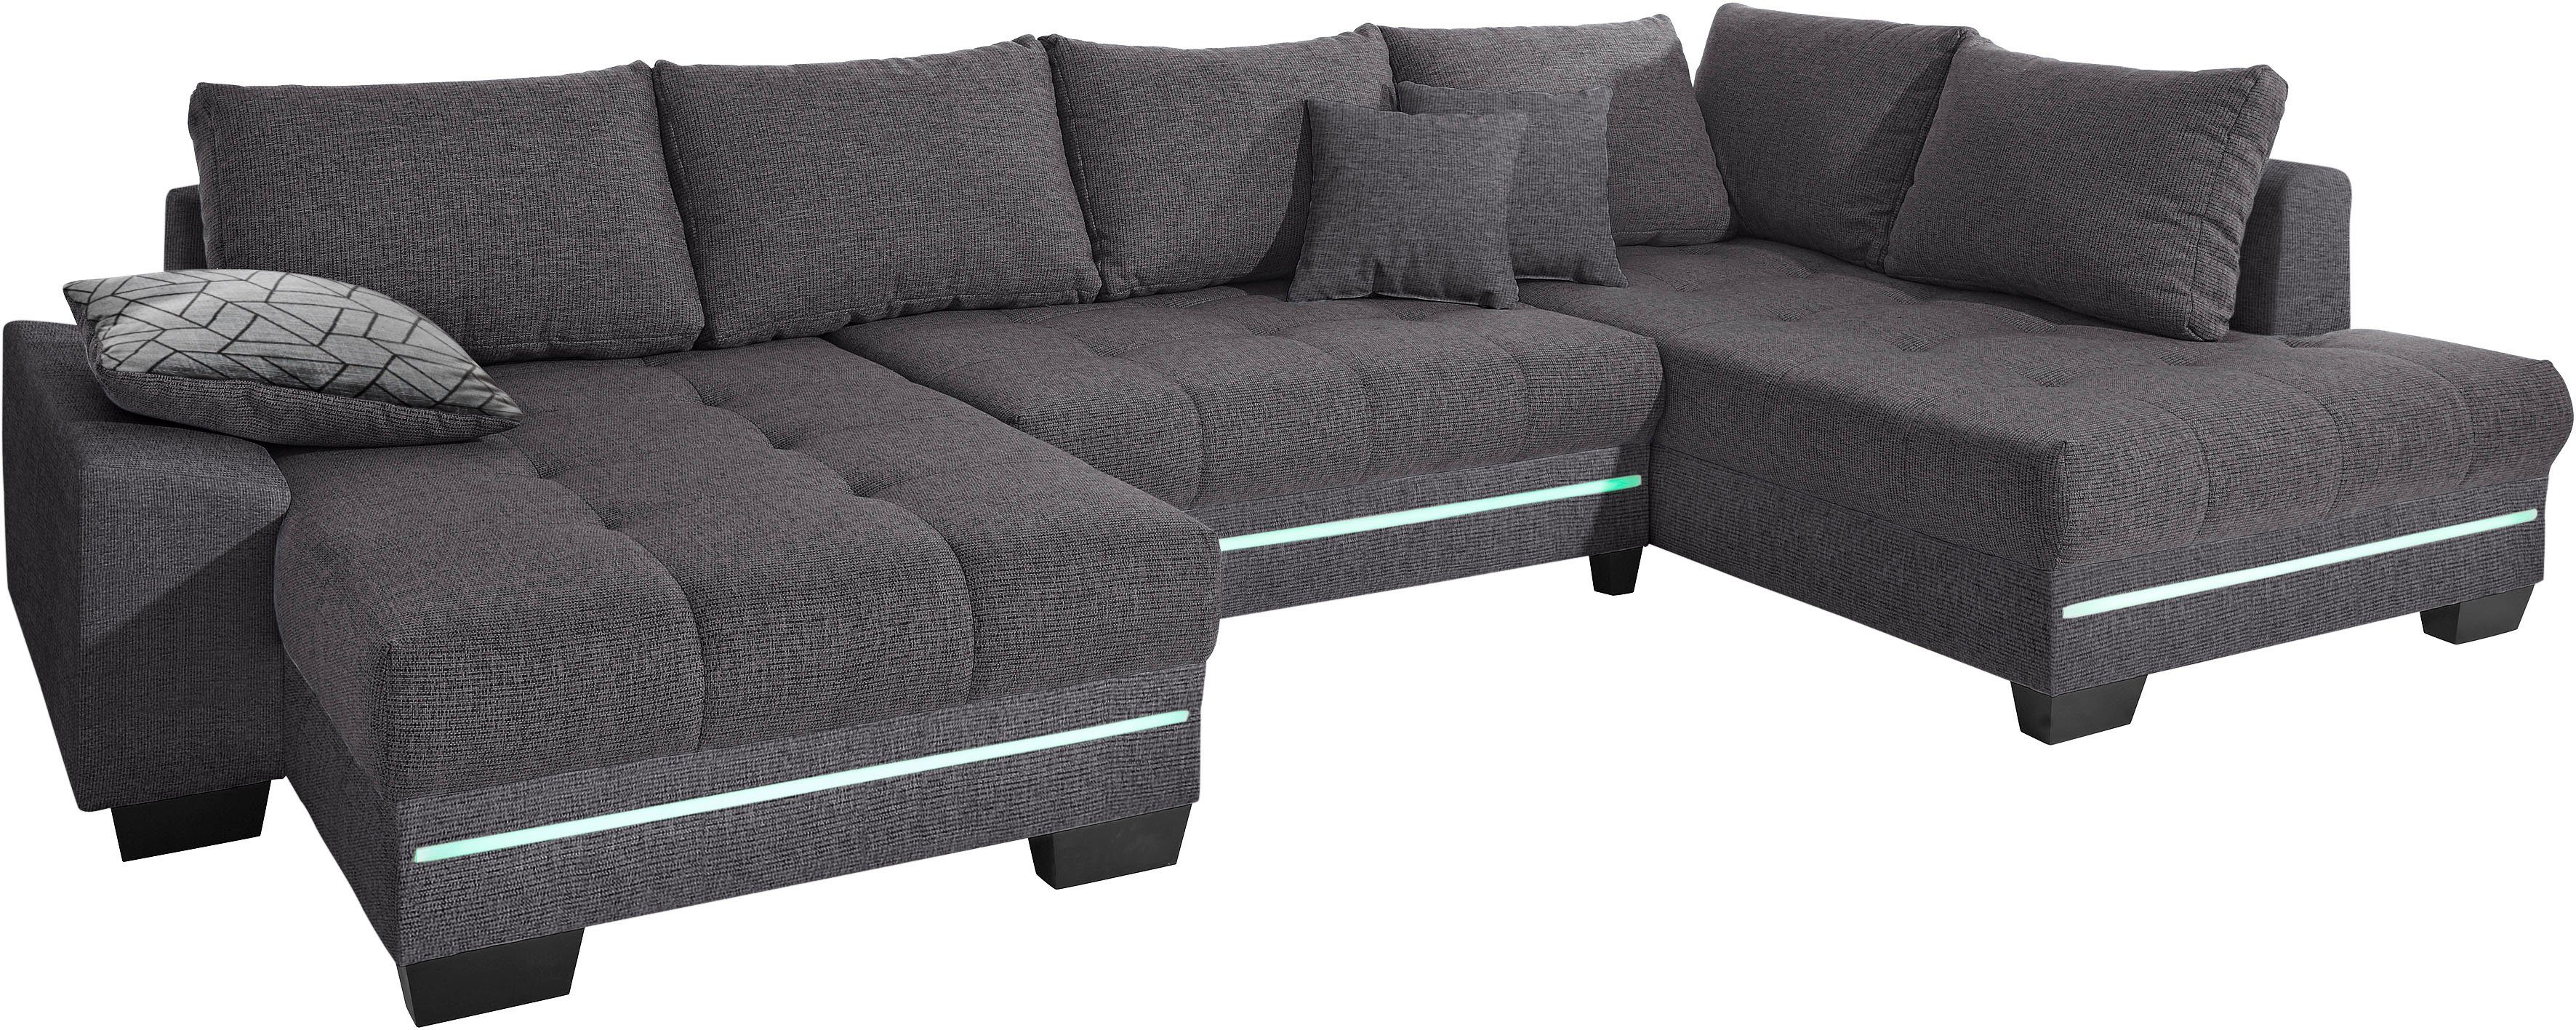 Mr. Couch Wohnlandschaft Nikita, Wahlweise mit Kaltschaum (140kg Belastung/Sitz), mit RGB-Beleuchtung